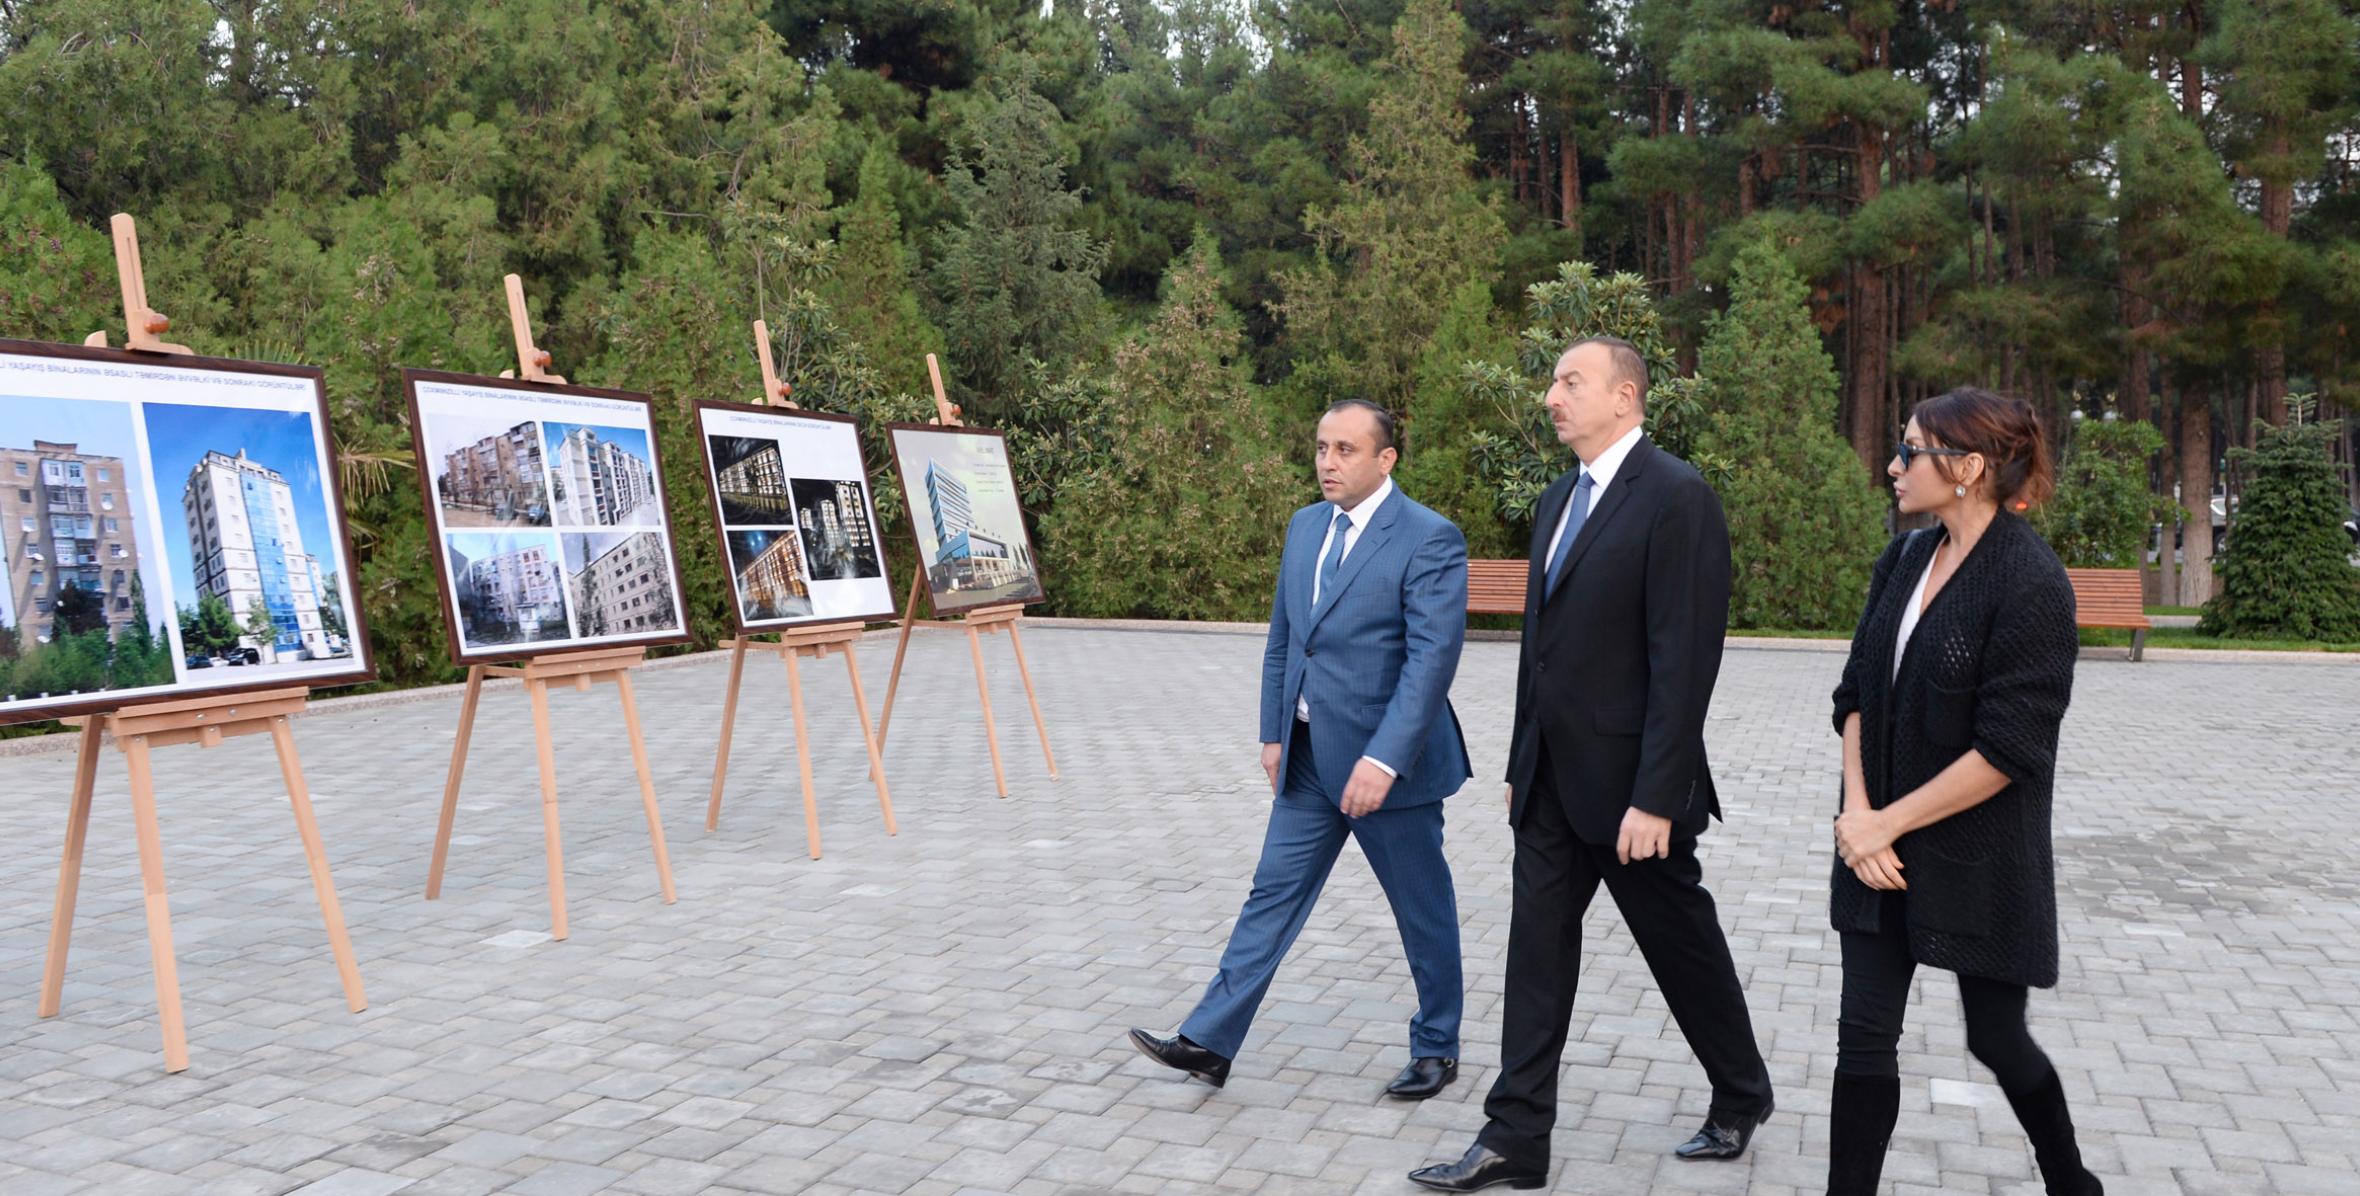 Ilham Aliyev arrived in Naftalan District on a visit